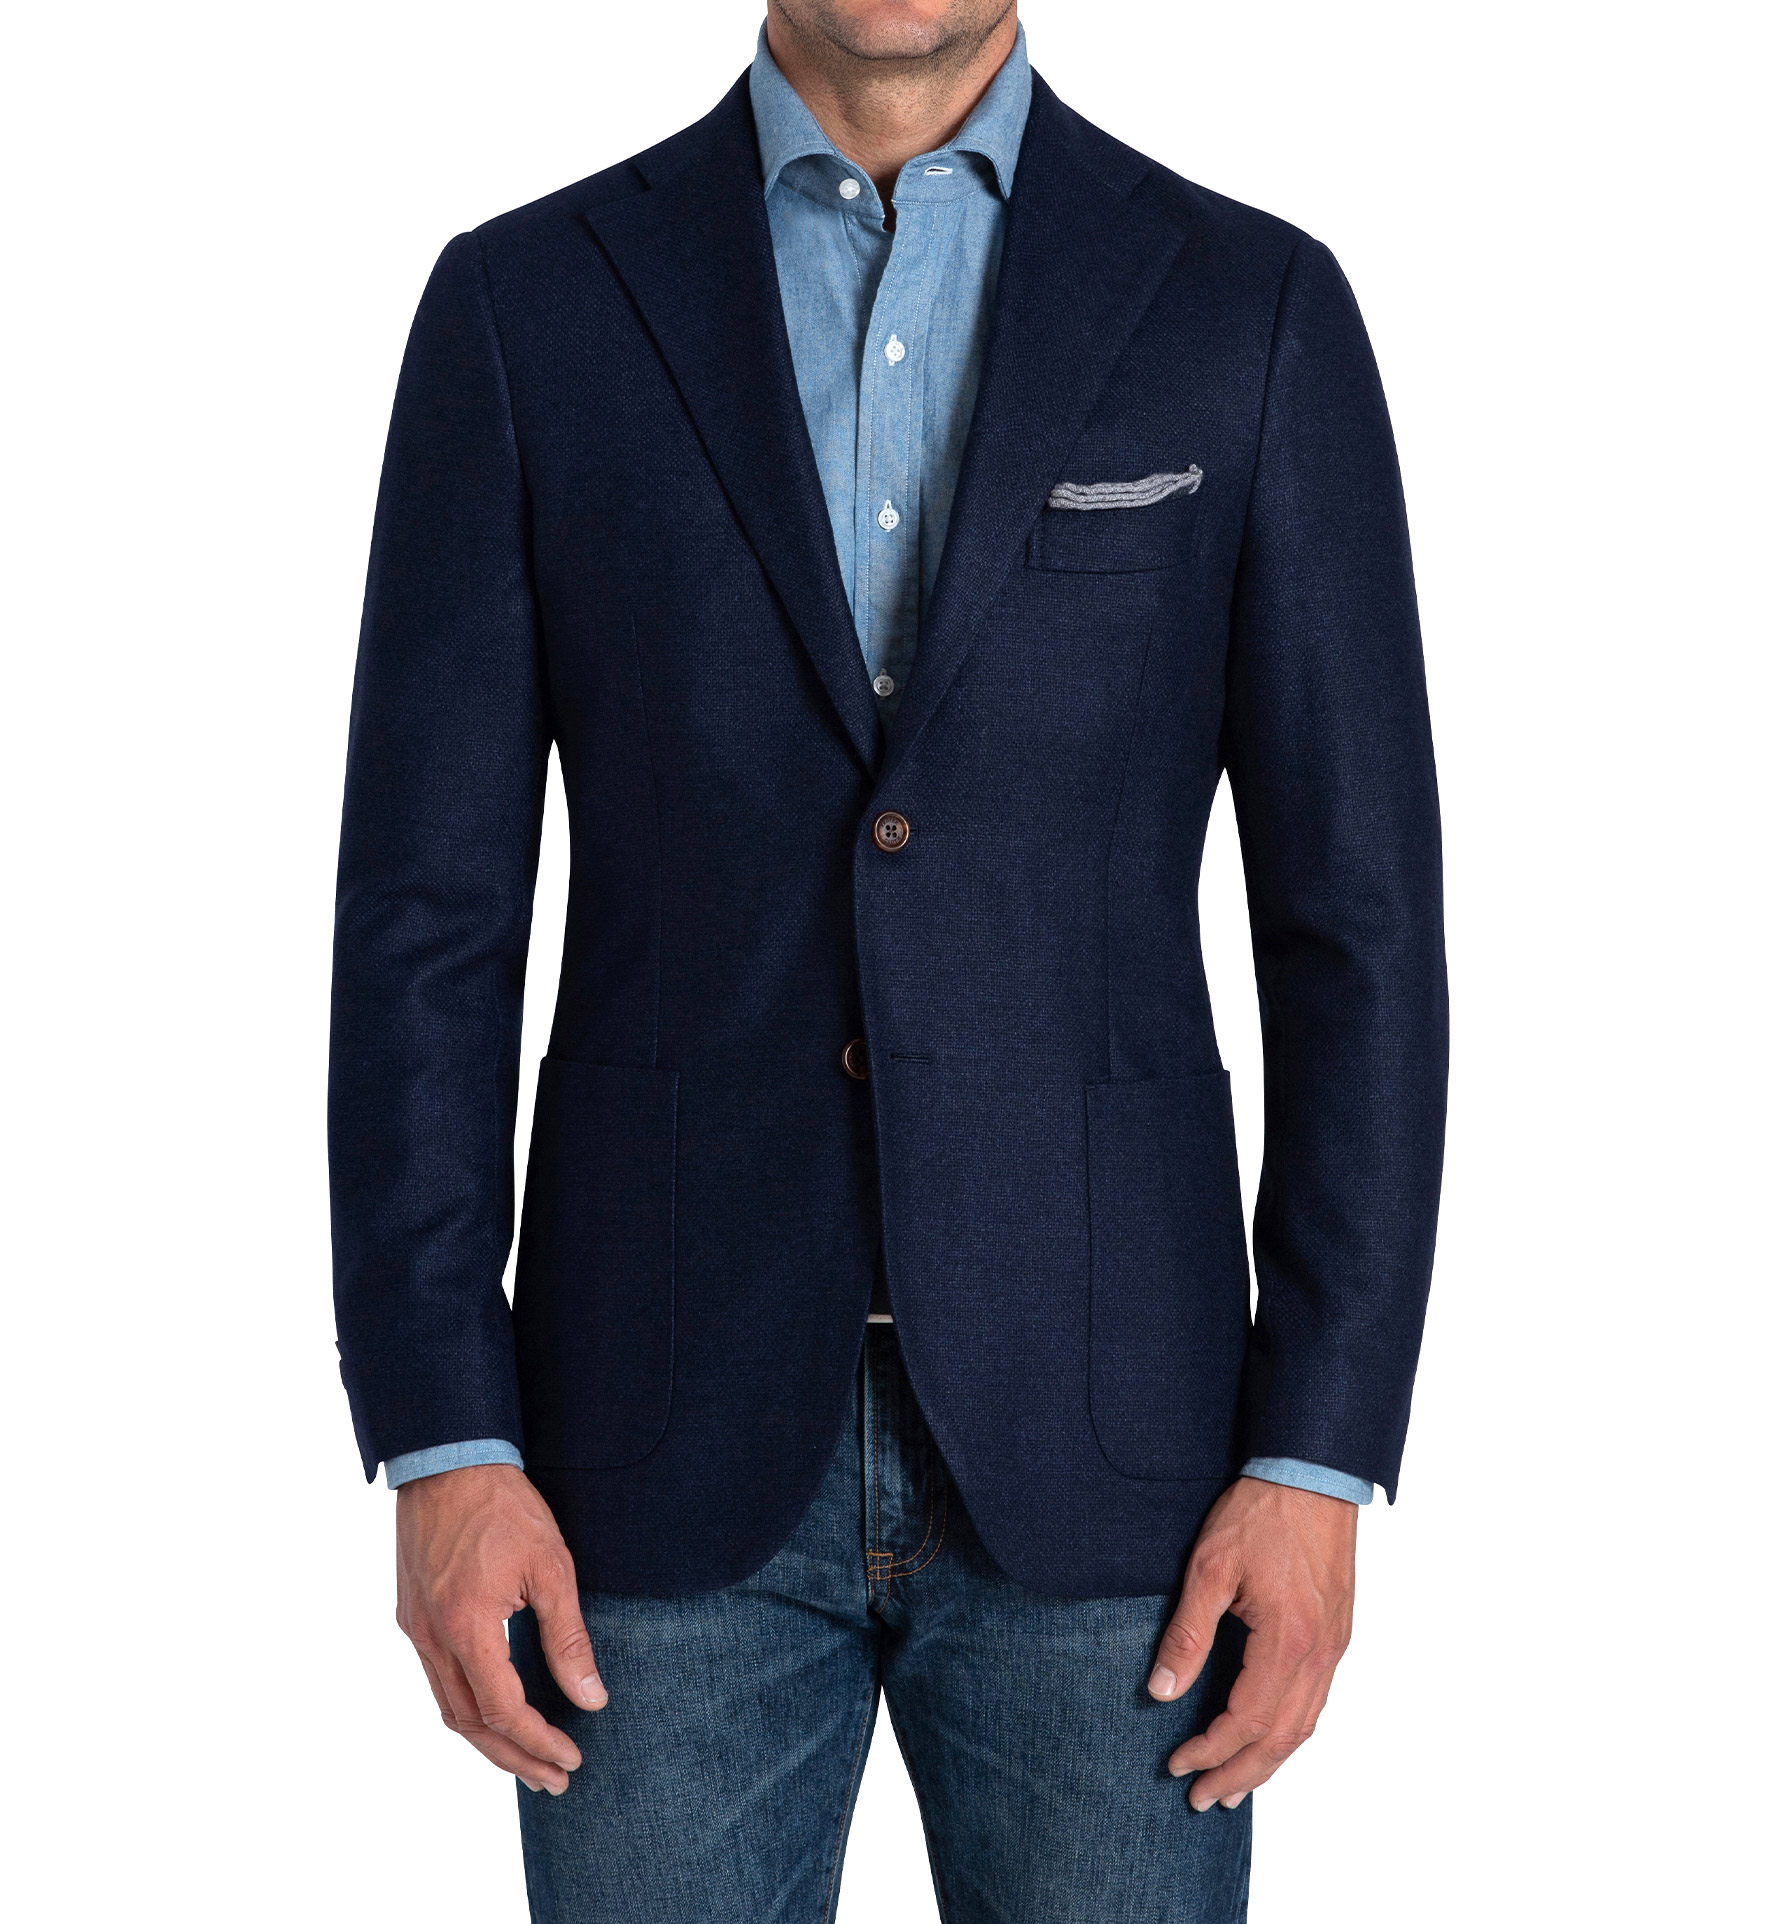 Bedford Ocean Blue Brushed Wool Hopsack Jacket - Custom Fit Tailored ...